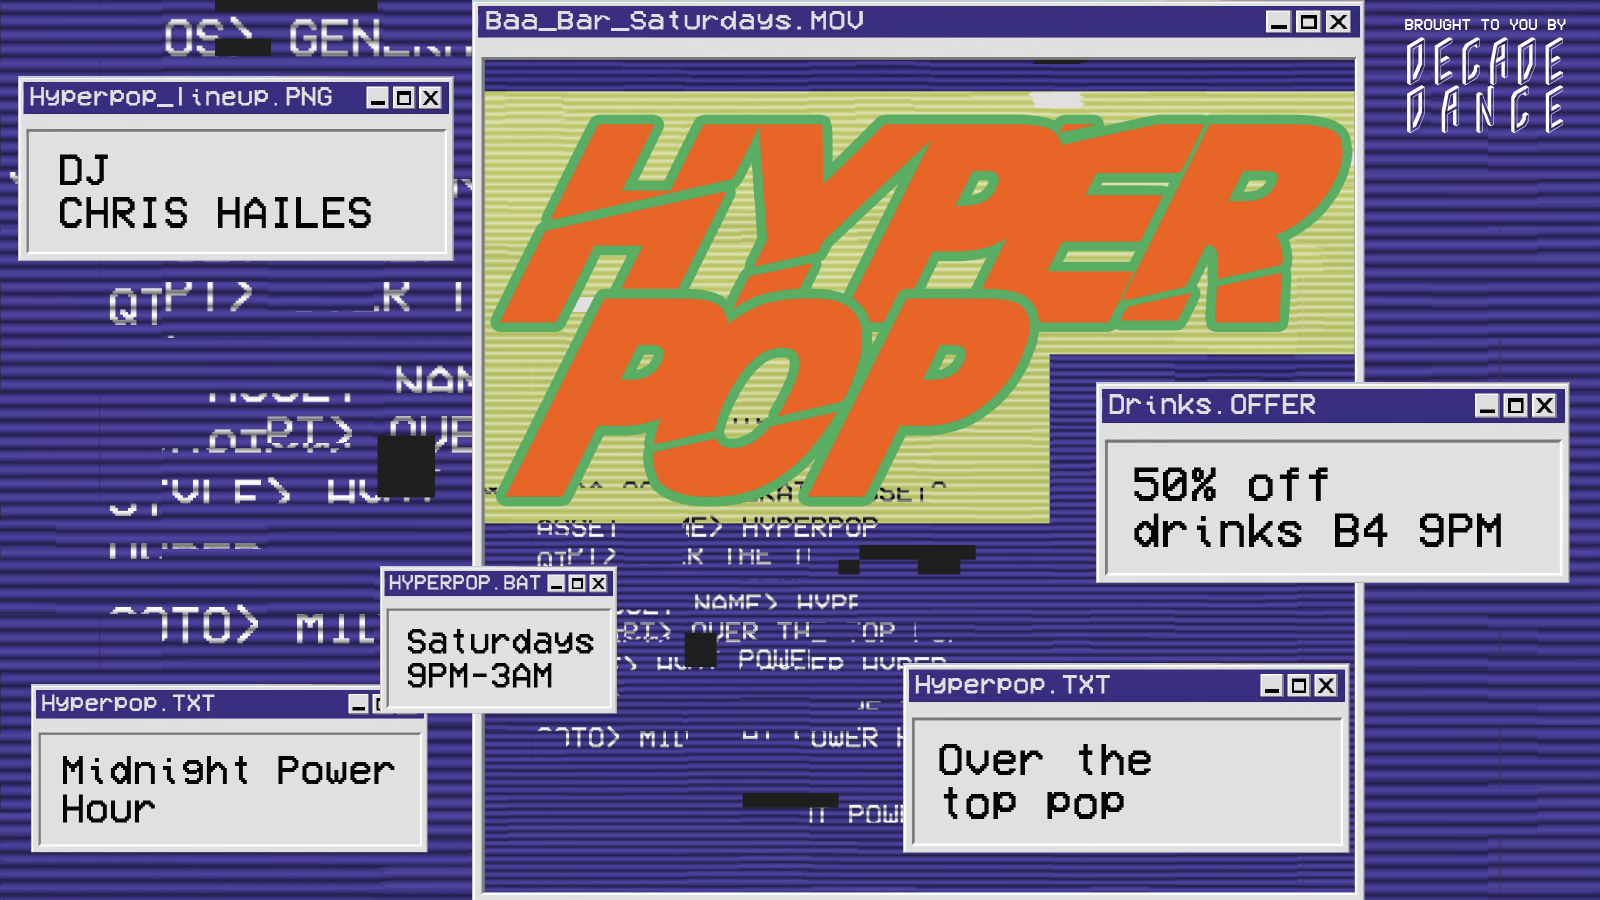 HyperPop